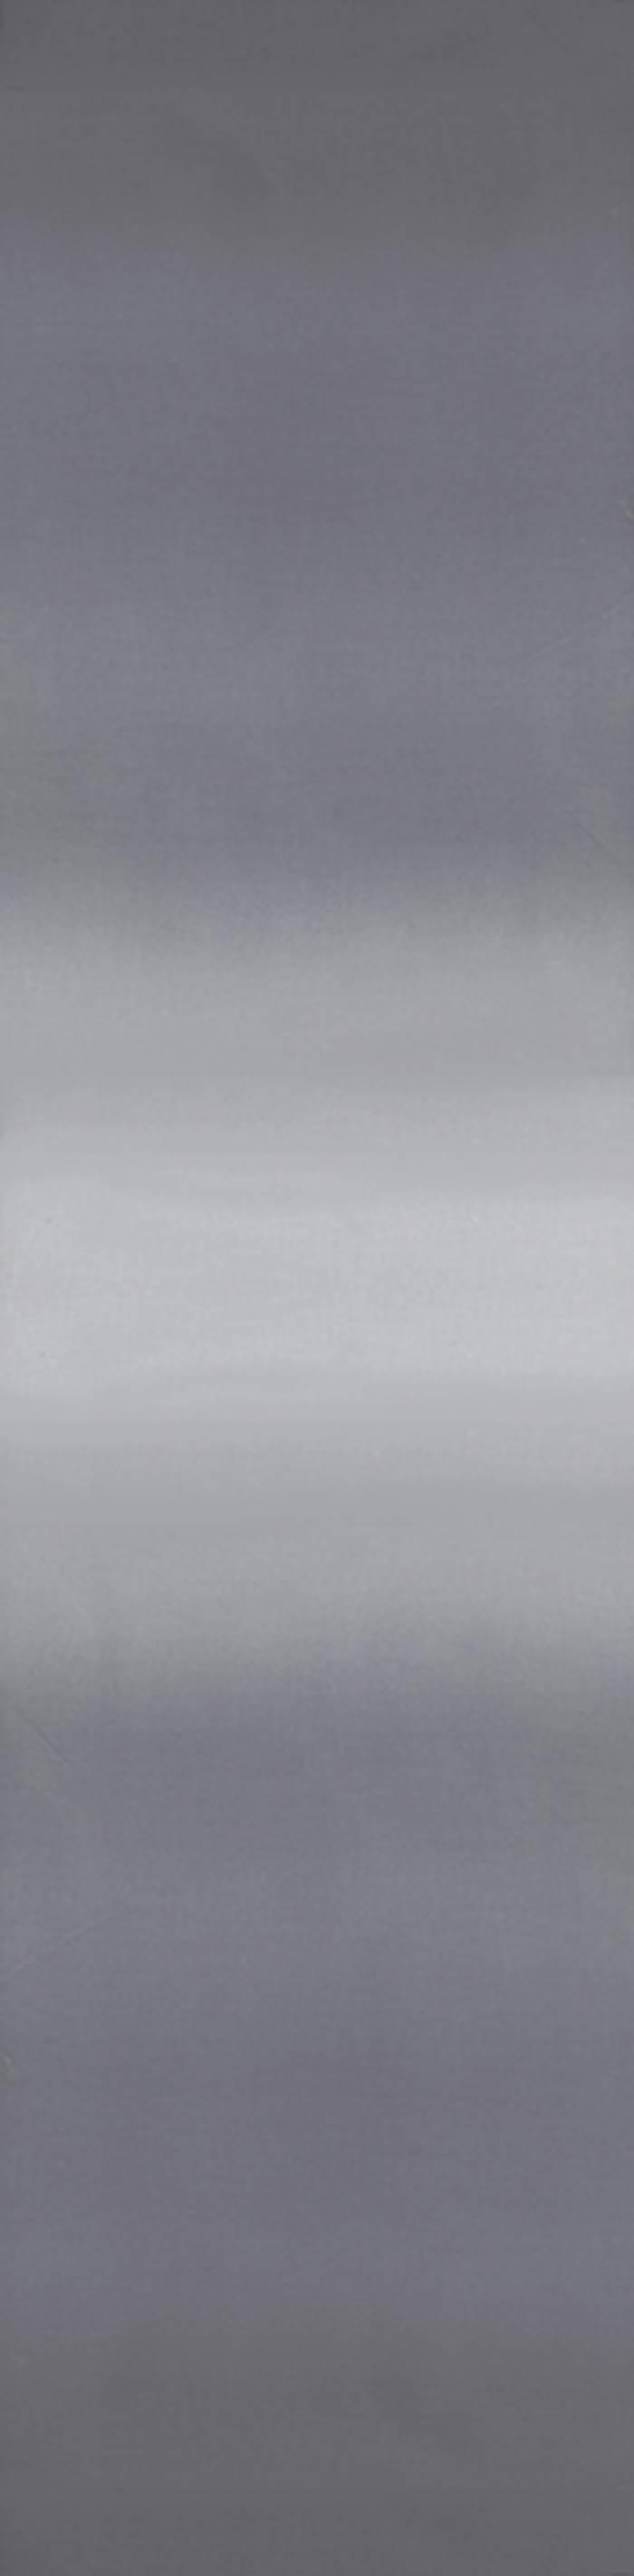 Tissu ombre Graphite Grey de V&CO 10800-13 - par 10cm